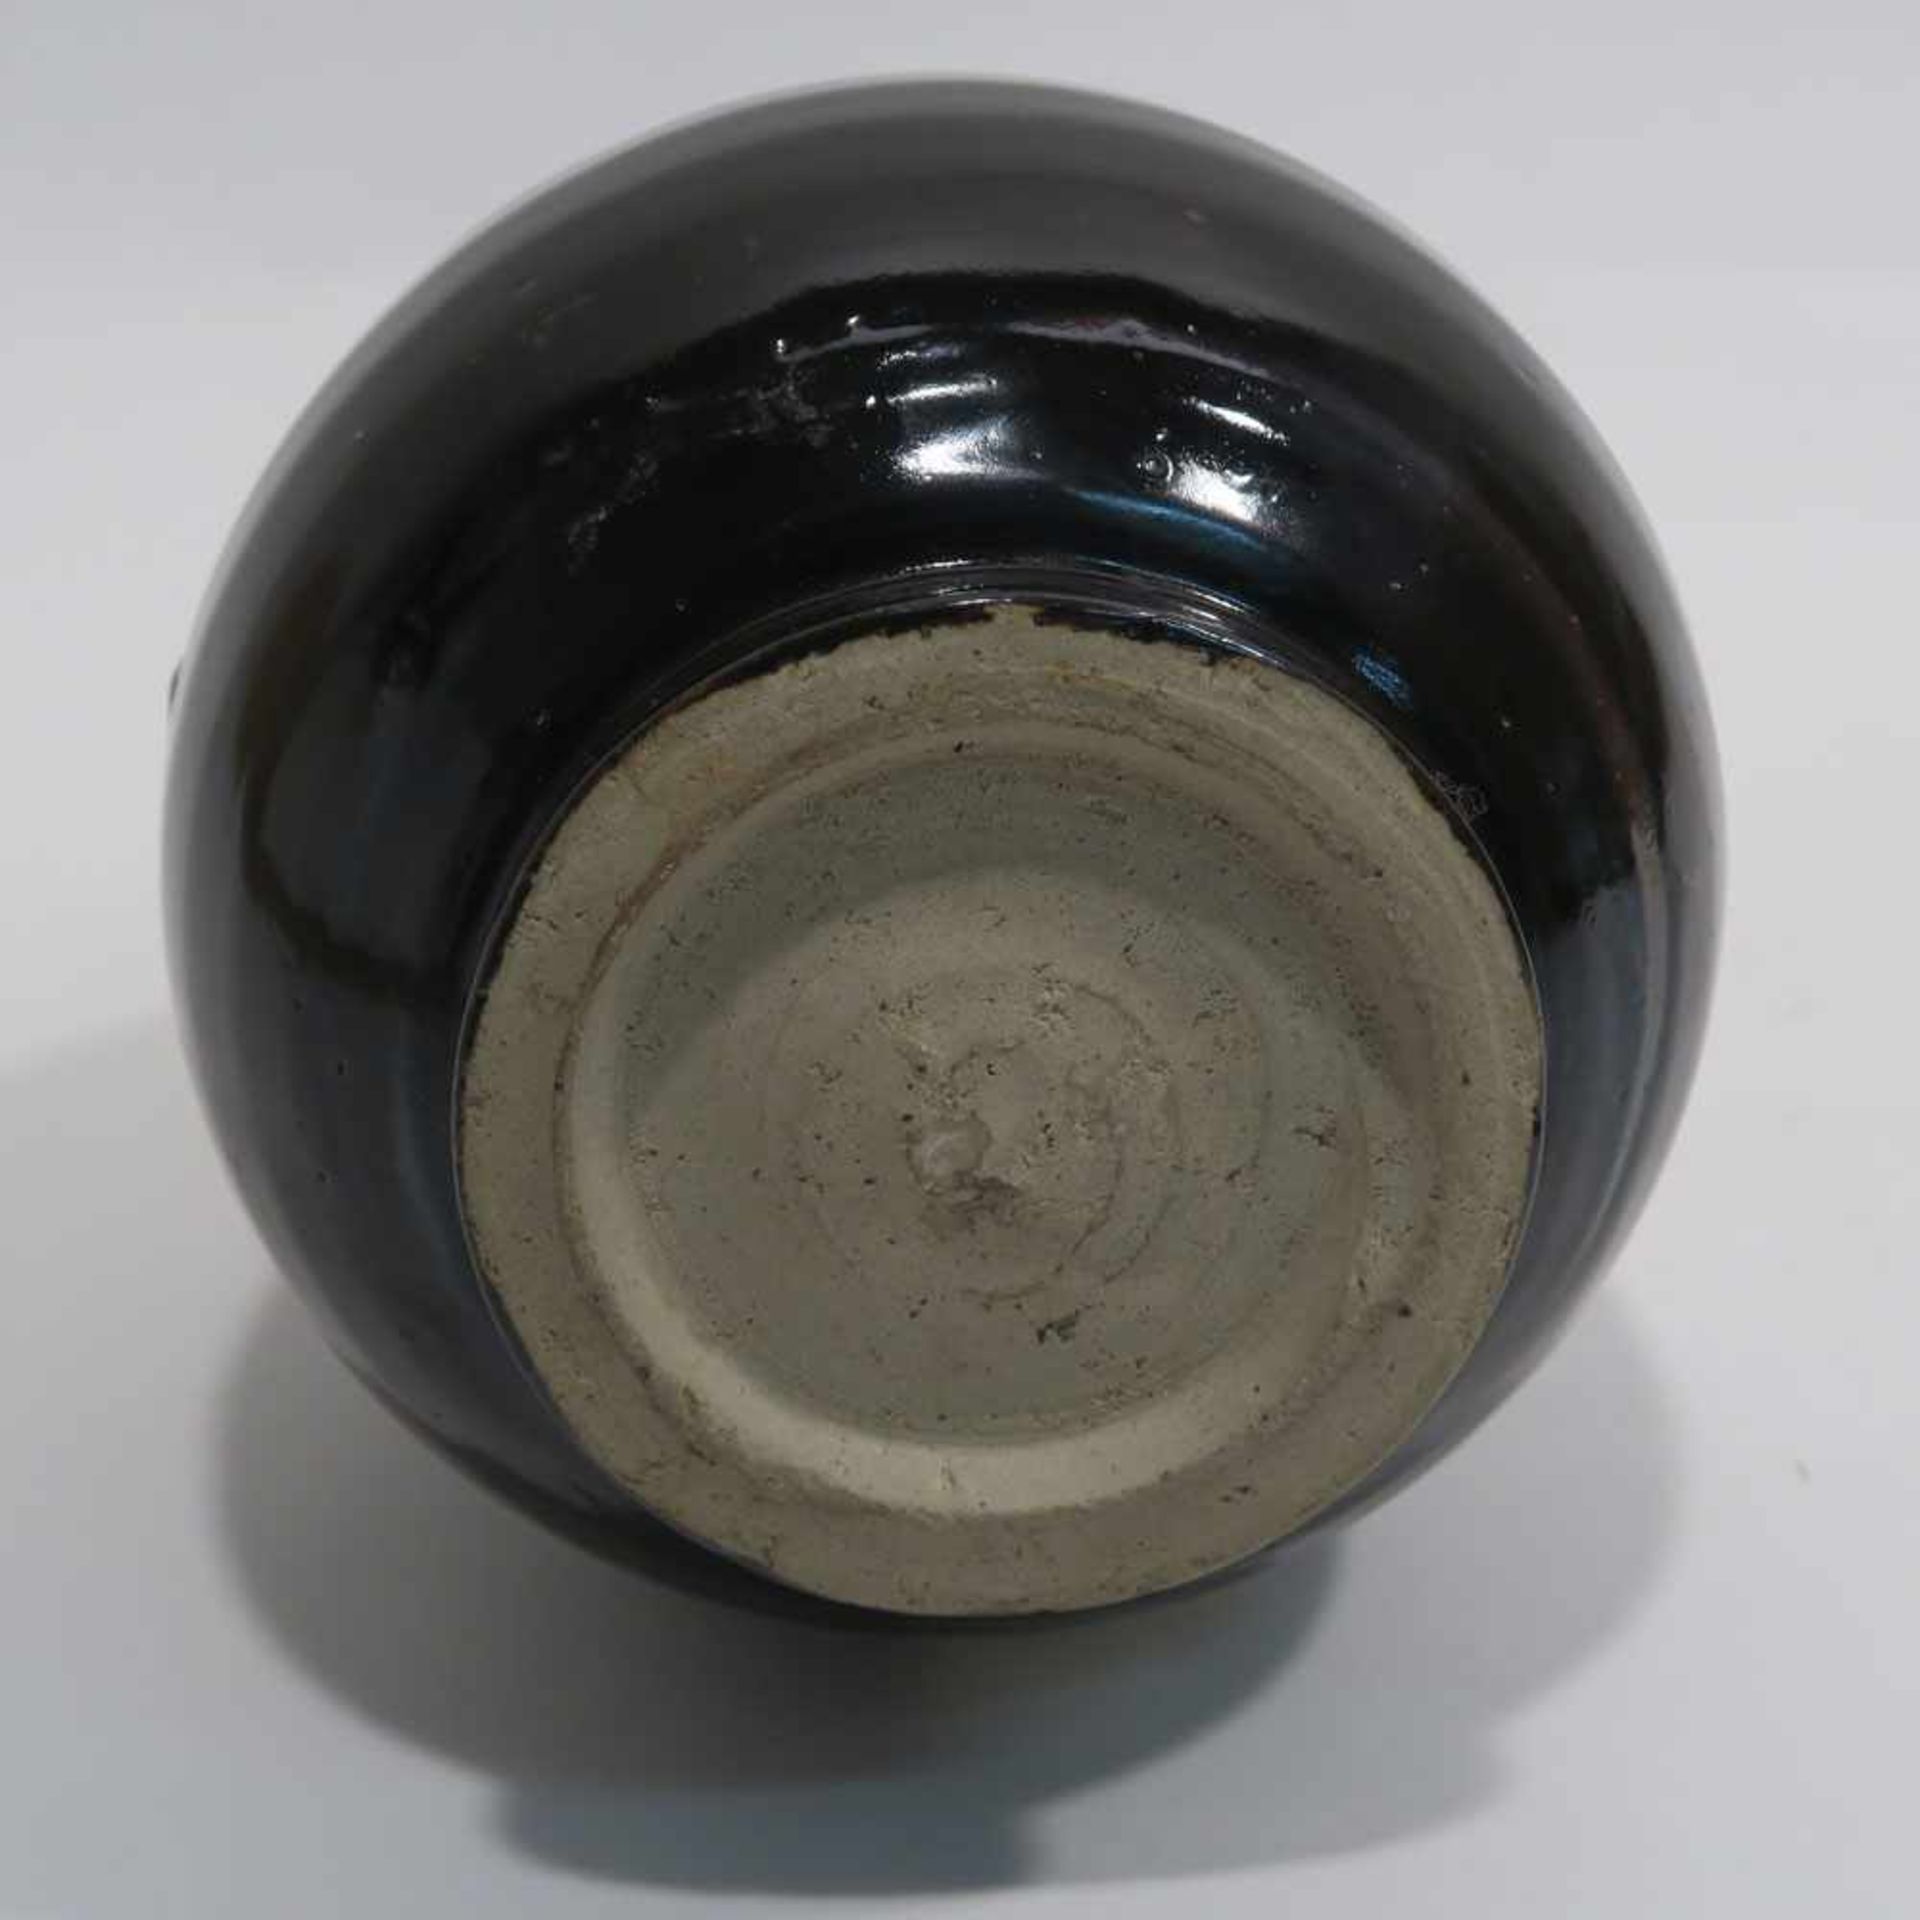 VaseChina, im Stil der Ming-Zeit. Steinzeug in der Art der Cizhou-Keramiken. Birnform mit - Bild 10 aus 10